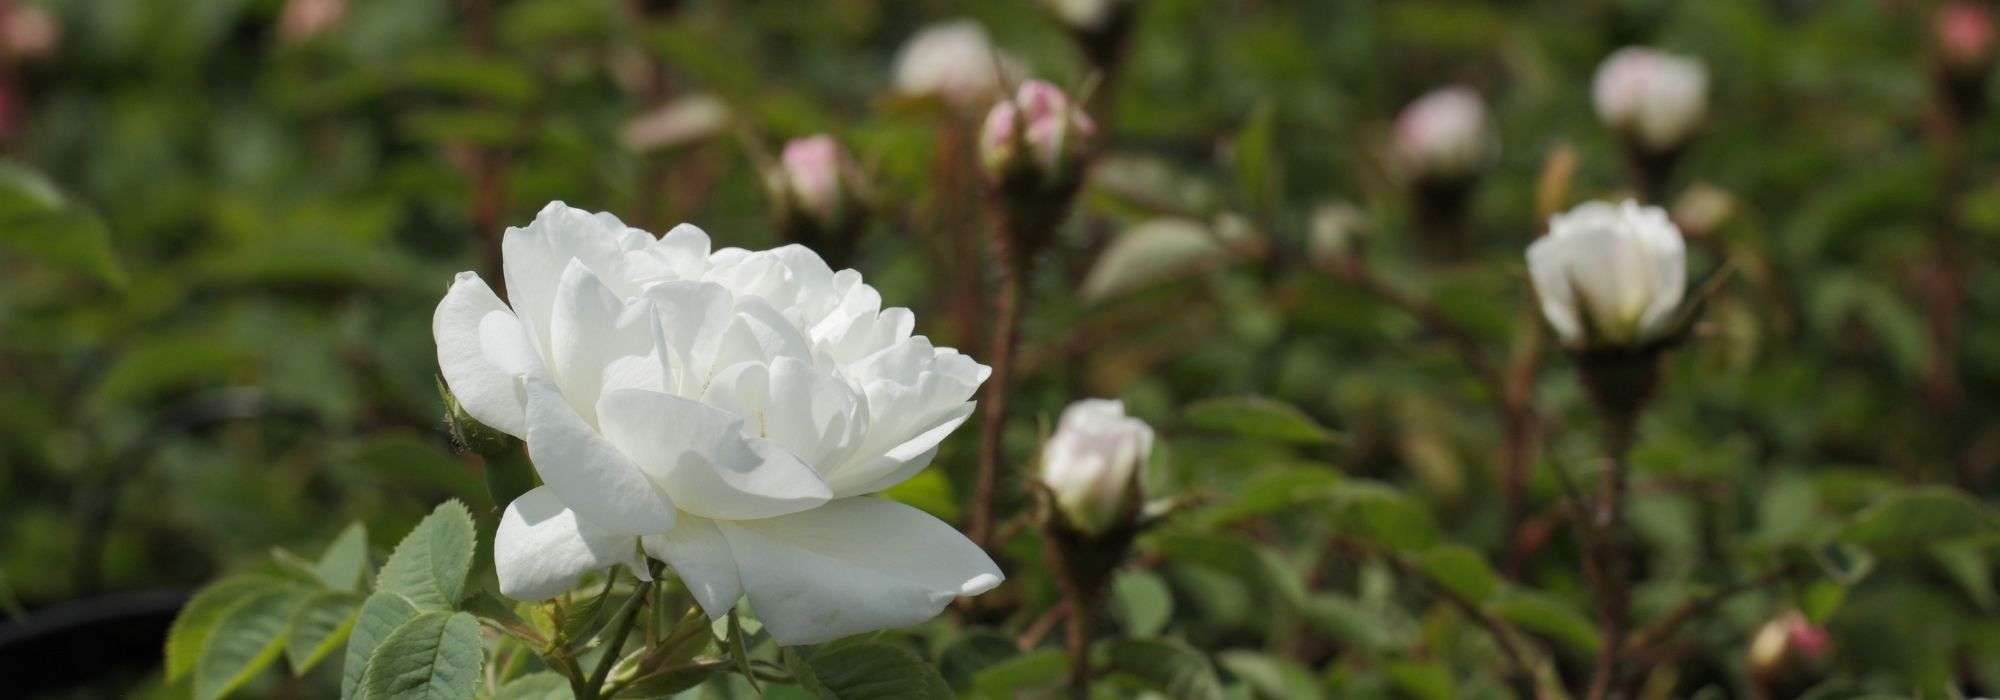 6 rosiers blancs très parfumés